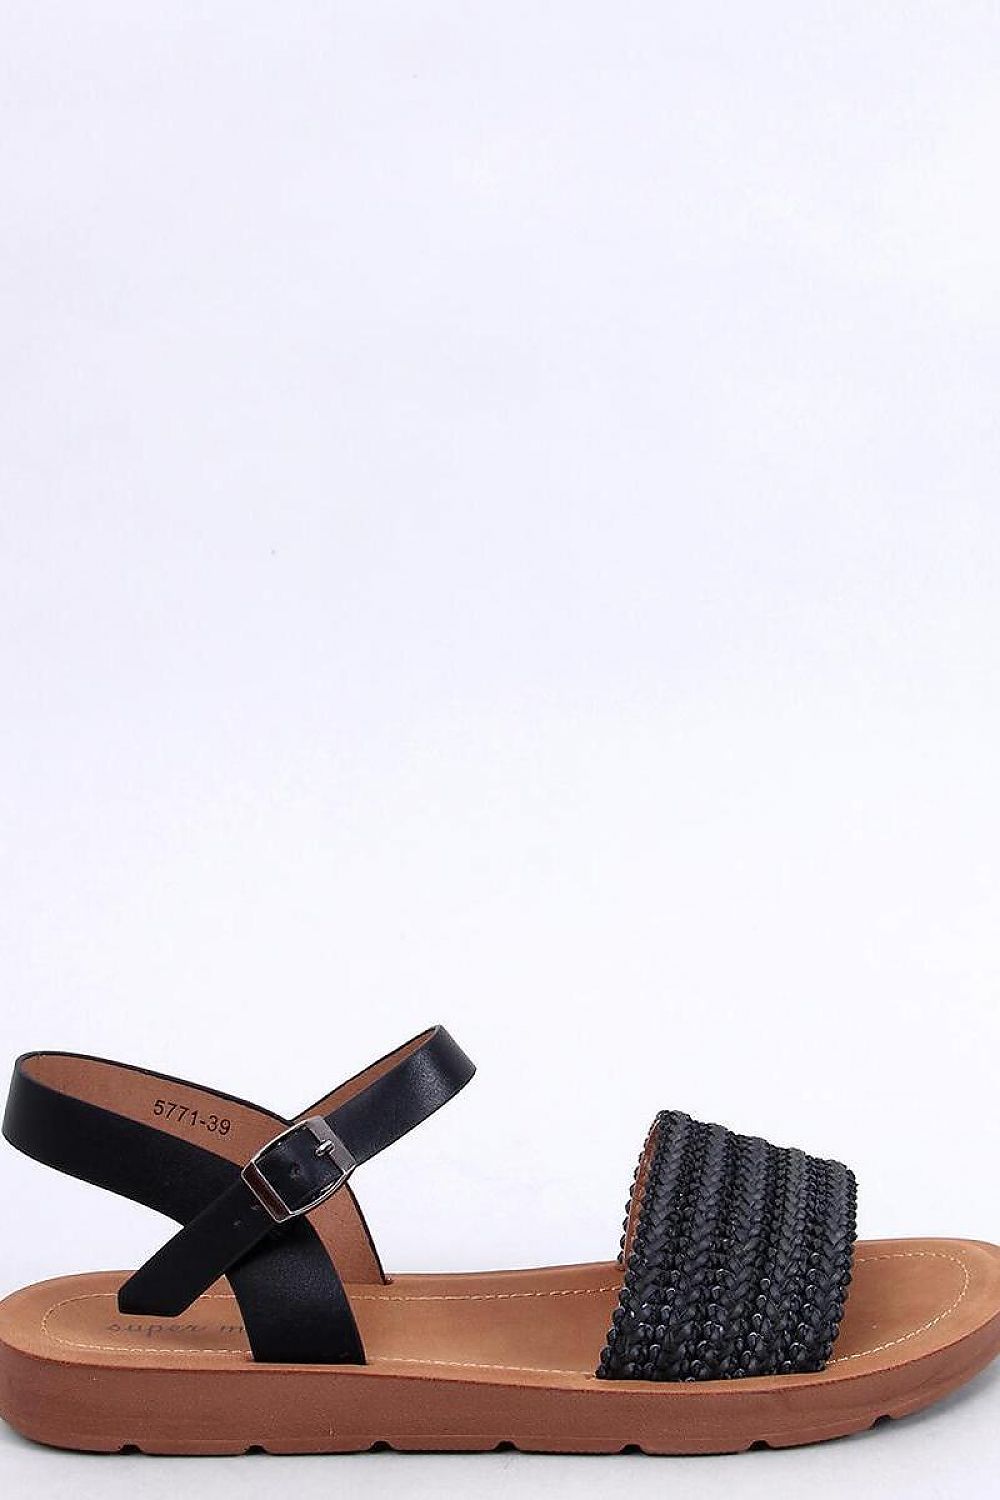 TEEK - Black Woven Boho Sandals SHOES TEEK MH 6  